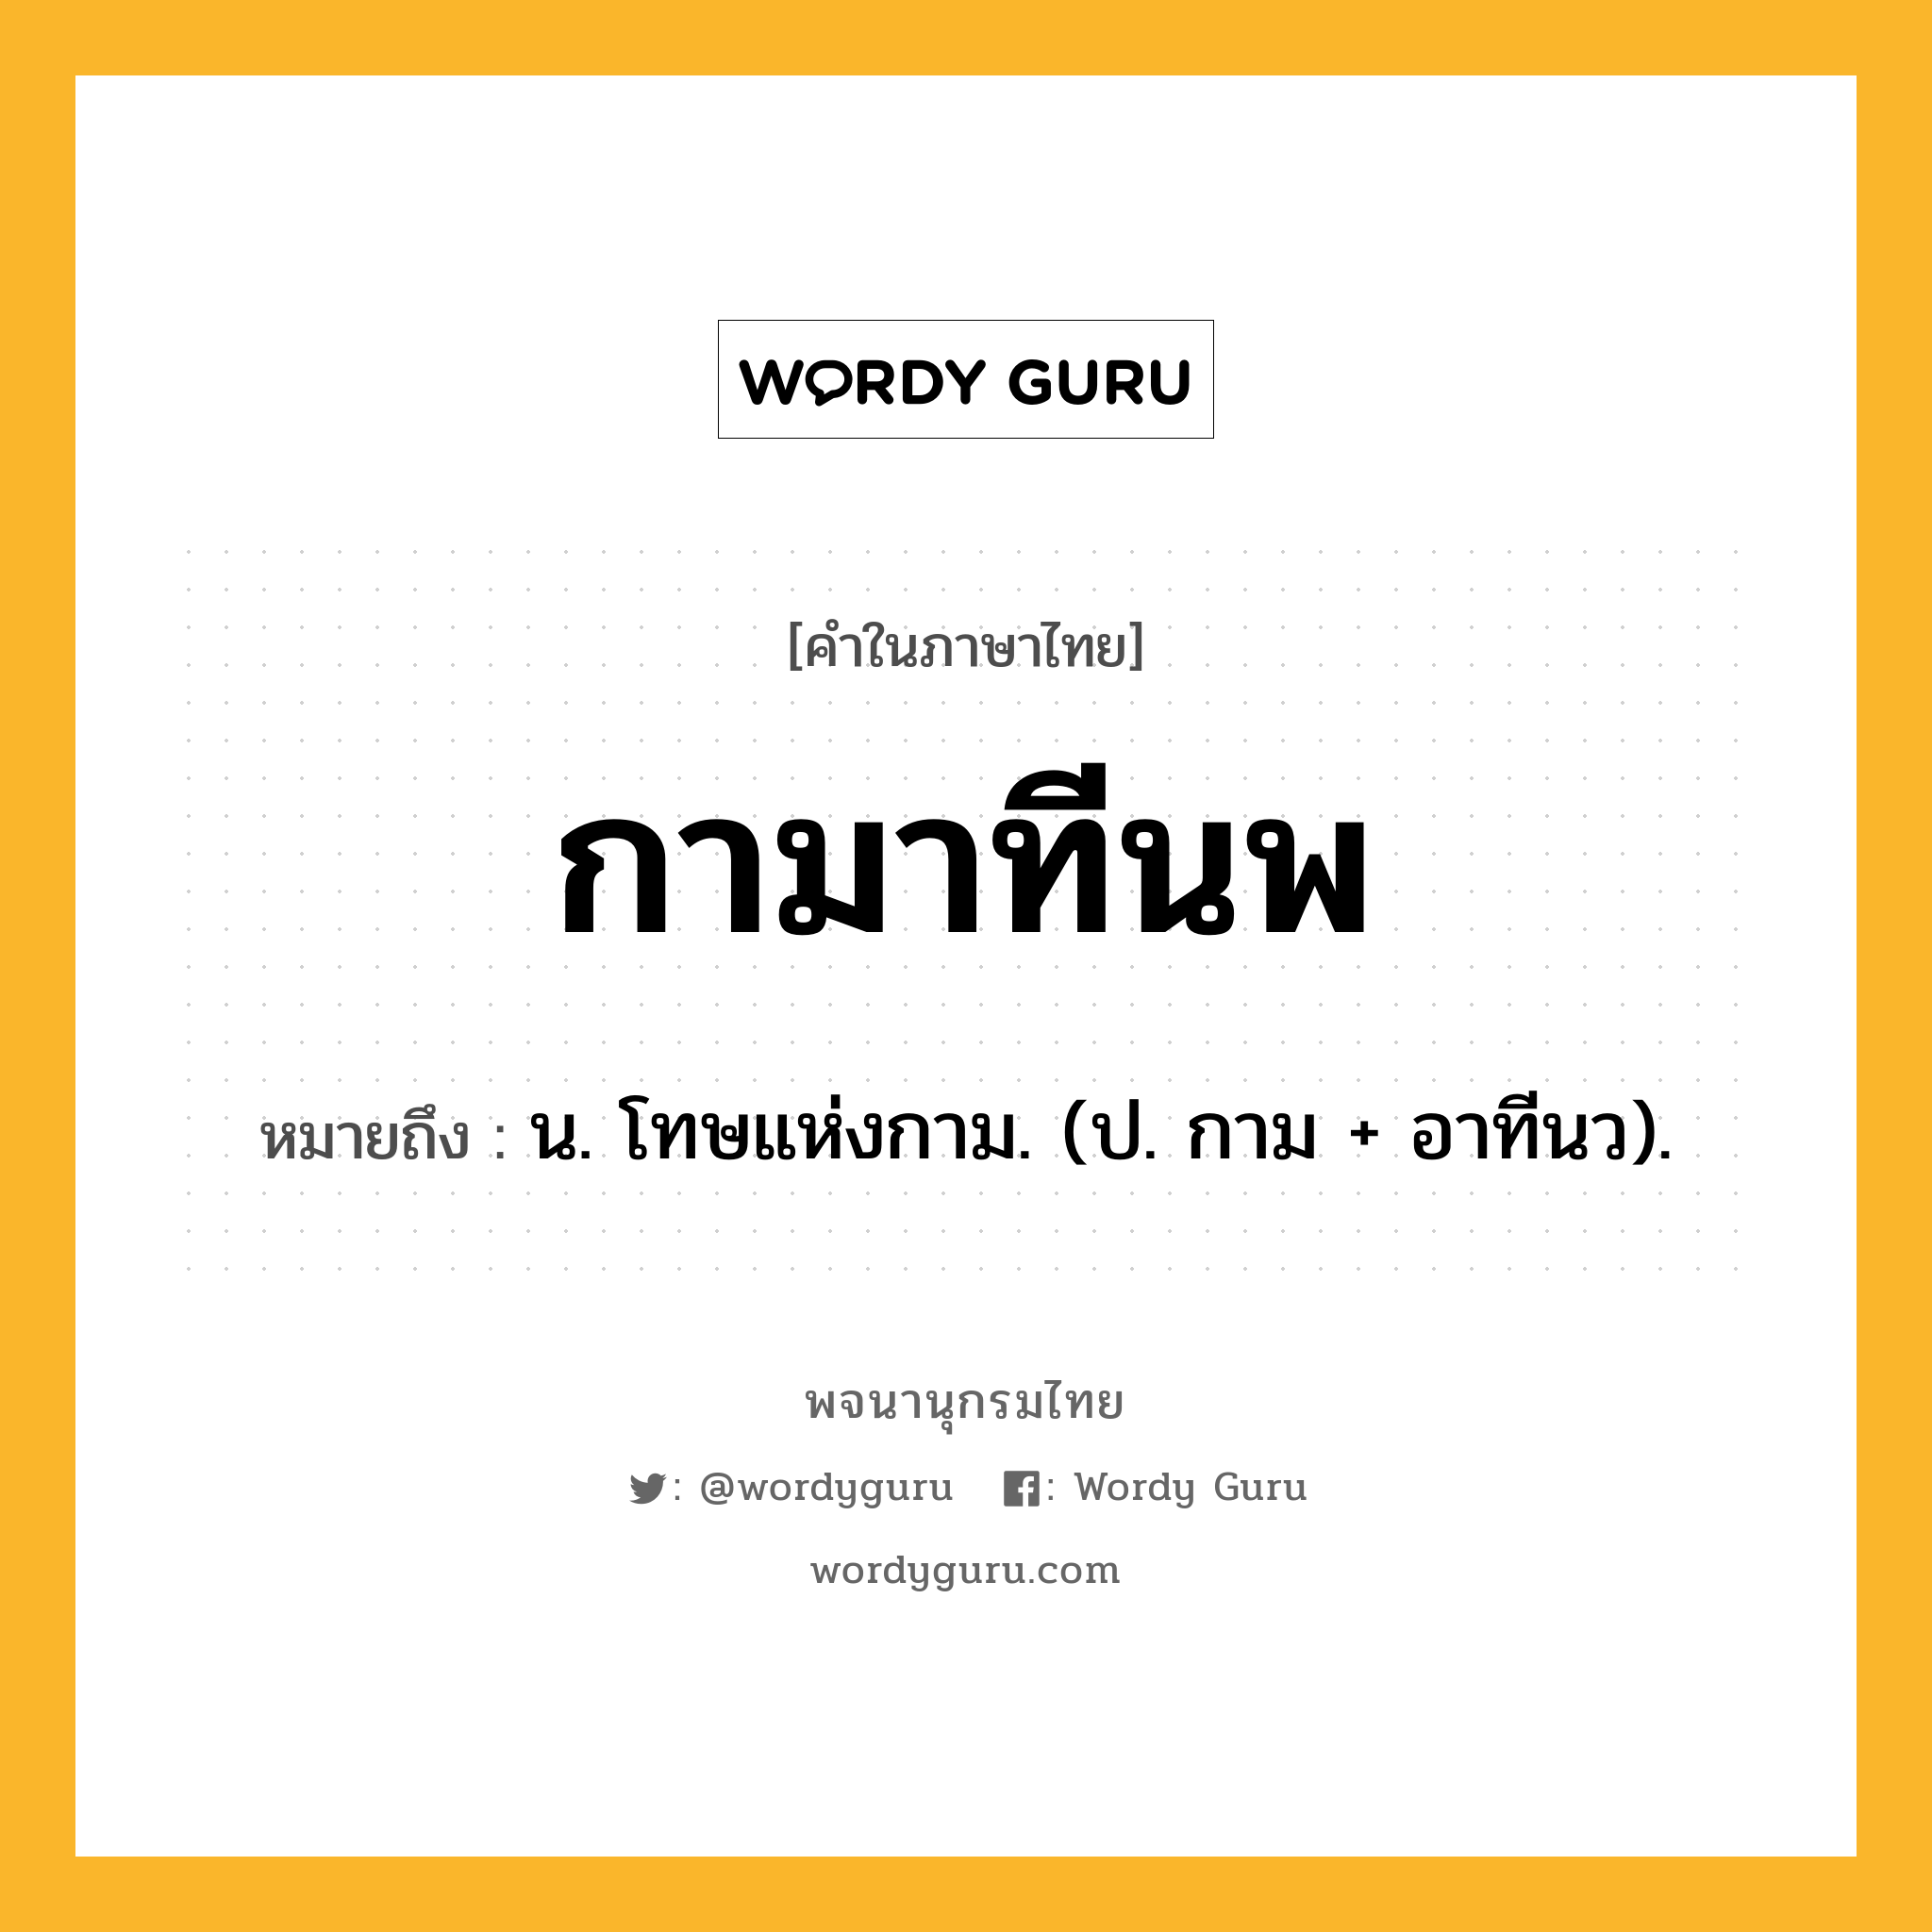 กามาทีนพ ความหมาย หมายถึงอะไร?, คำในภาษาไทย กามาทีนพ หมายถึง น. โทษแห่งกาม. (ป. กาม + อาทีนว).